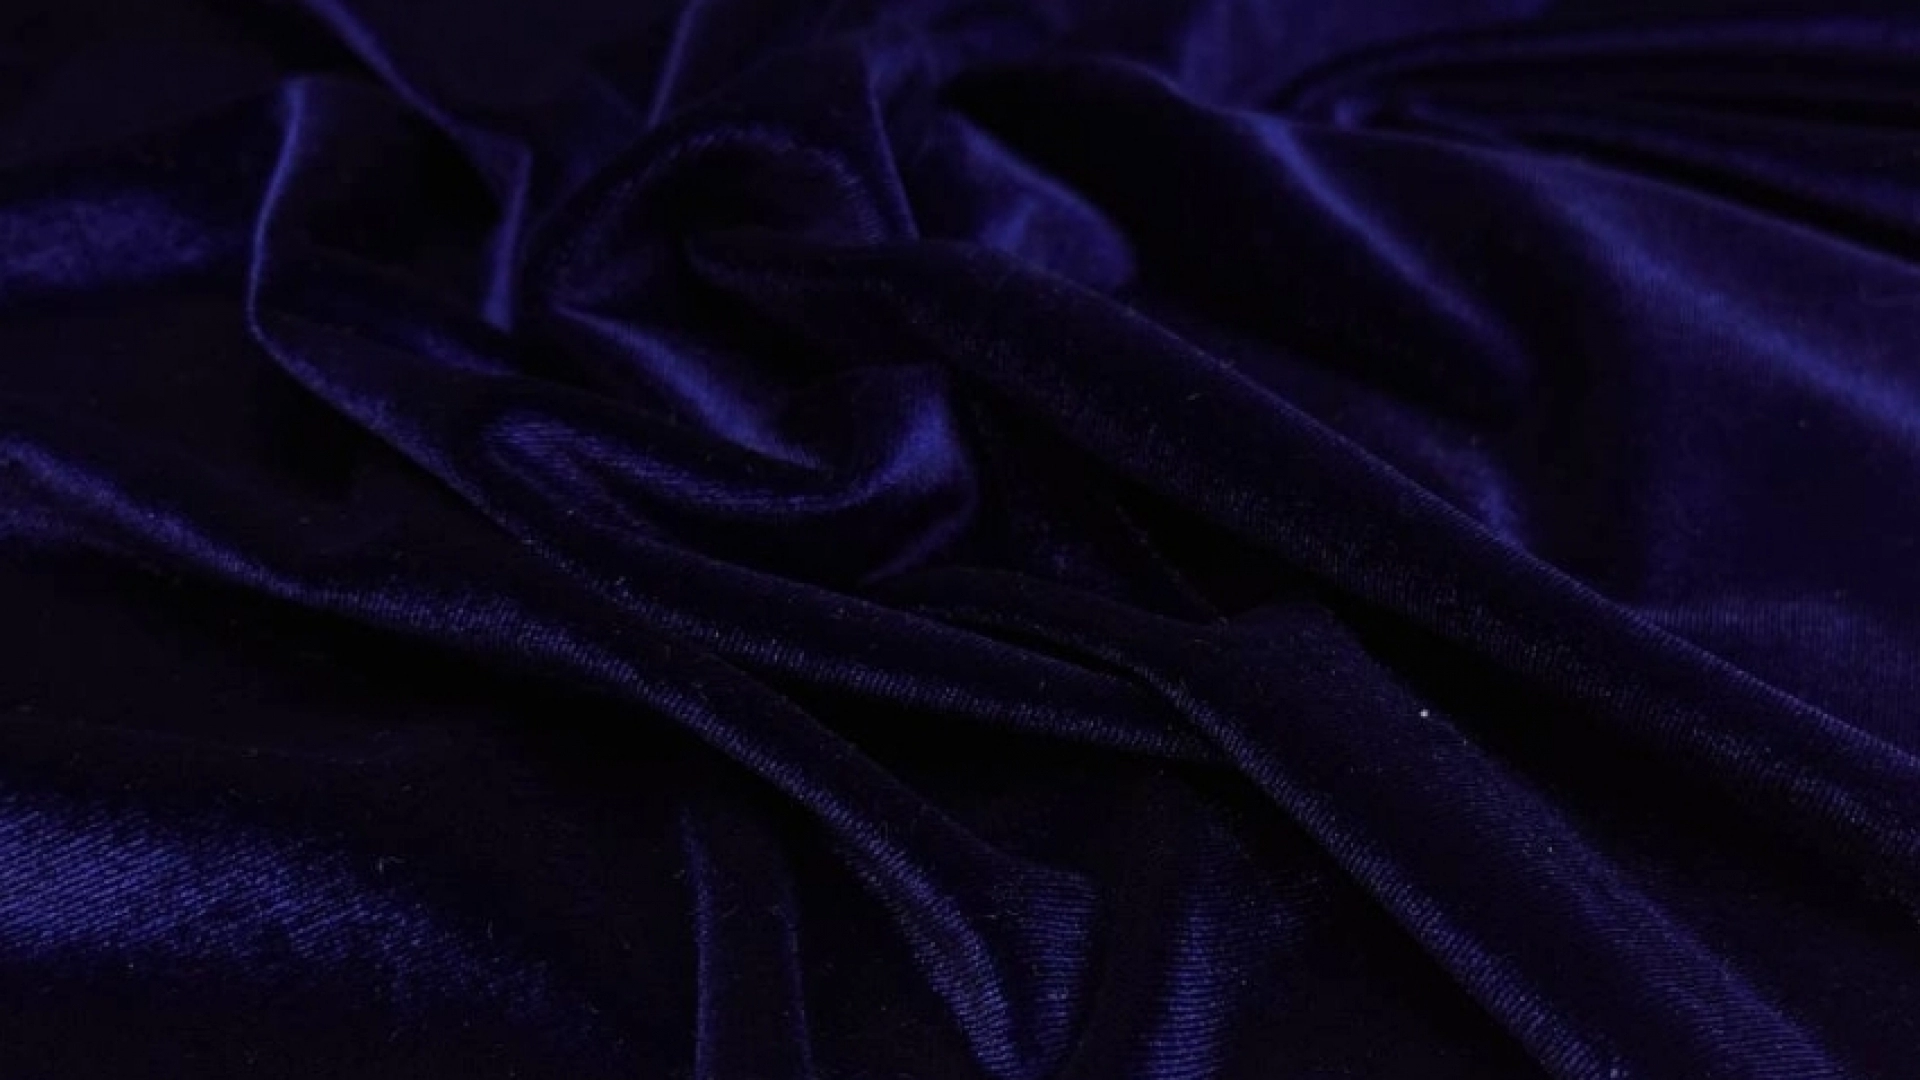 Бархат с плотно набитым ворсом, за счет это цвет становится более глубоким и насыщенным. Цвет чернильно-синий, горящий оттенок невероятно красивый. Тактильно бархат невероятно мягкий, шелковистый и очень хорошо тянется в обе стороны.
Идеален для пошива новогоднего платья, базовой юбки по фигуре, водолазки или топа, а также свободных брюк.